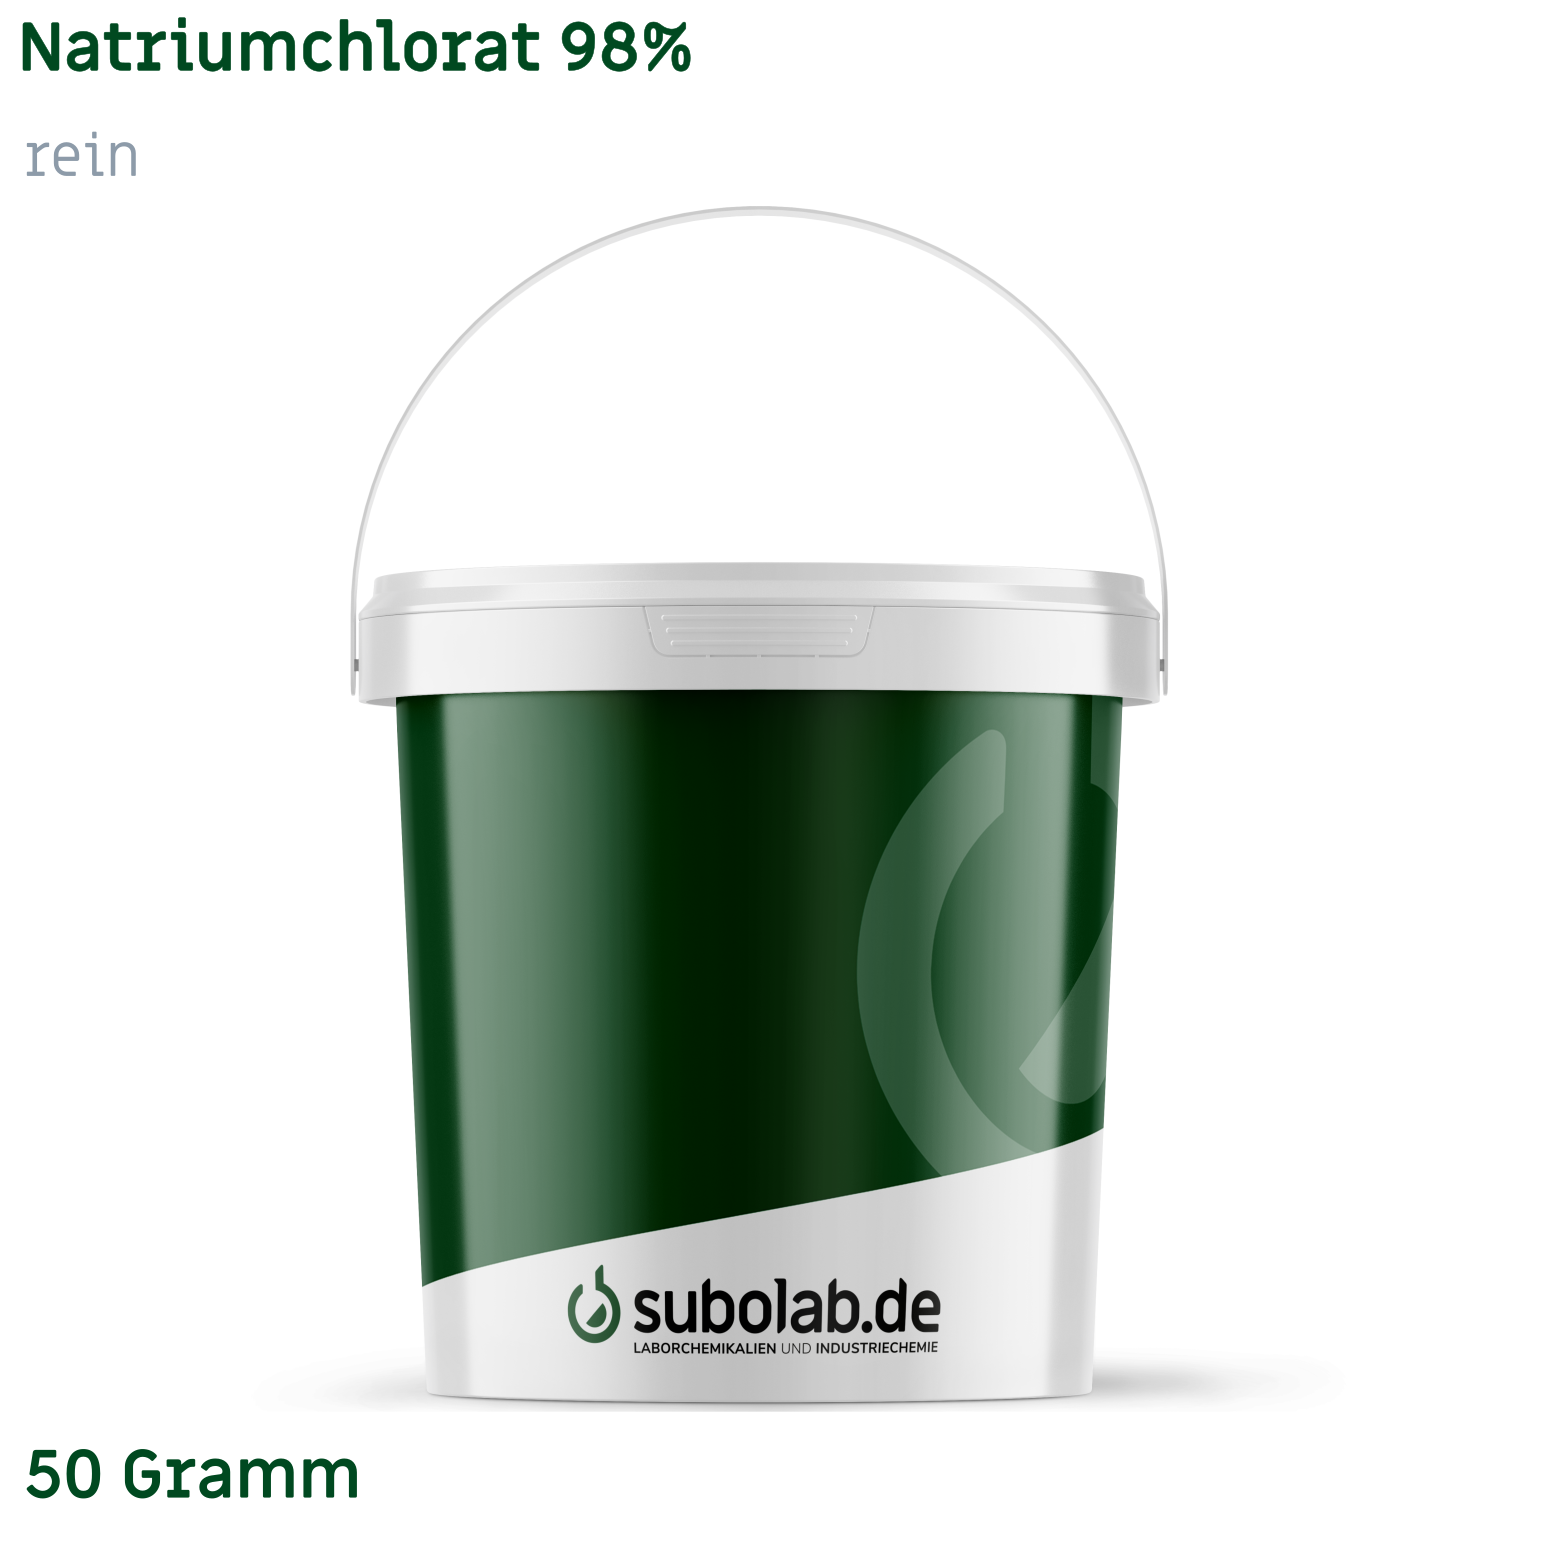 Bild von Natriumchlorat 98% rein (50 Gramm)